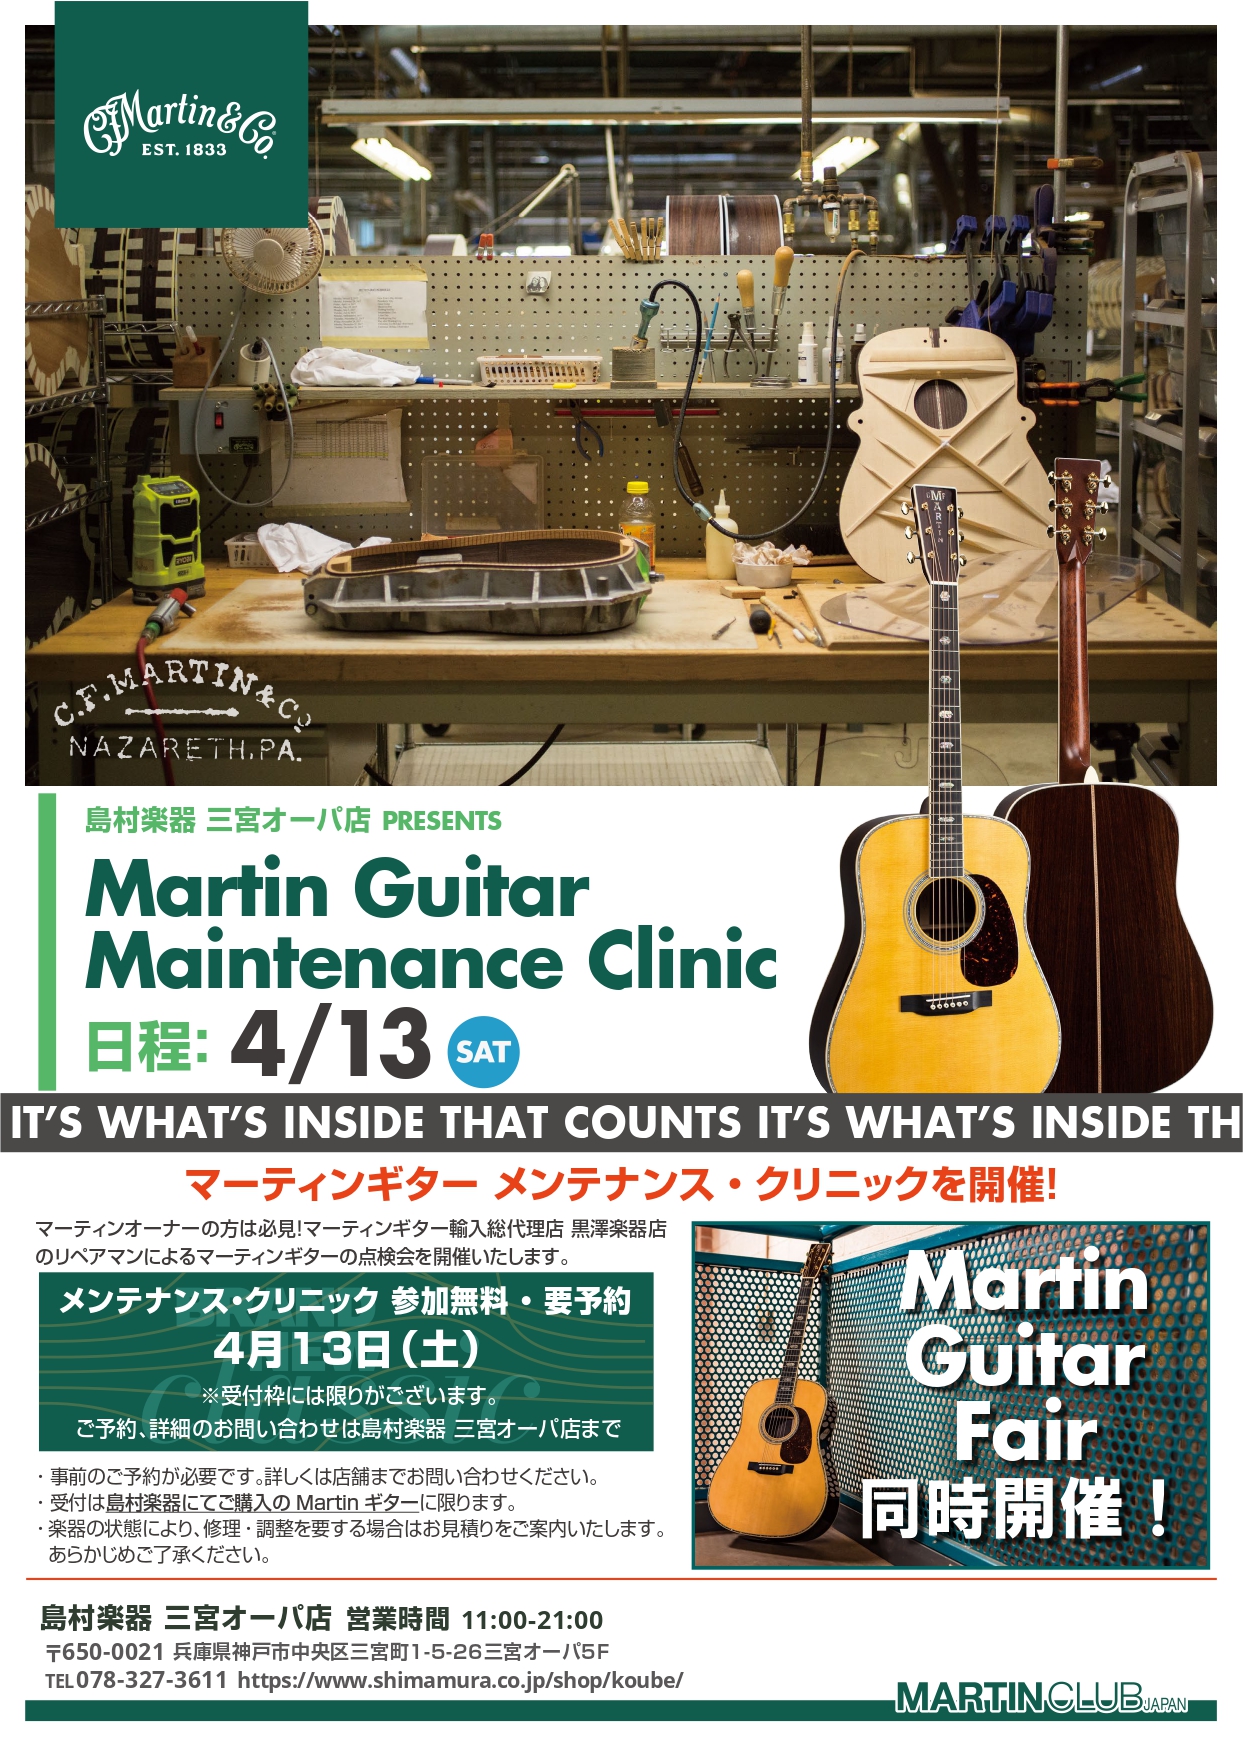 CONTENTSマーティンギター日本総代理店「黒澤楽器店」専属リペアマンによるメンテナンスイベントを開催します！Web予約はこちらより！Martin Guitarフェアも同時開催します！4/13（土）～4月21（日）まで当店にやってくるMartin Guitar一覧はこちら！（4/10更新）マーティ […]